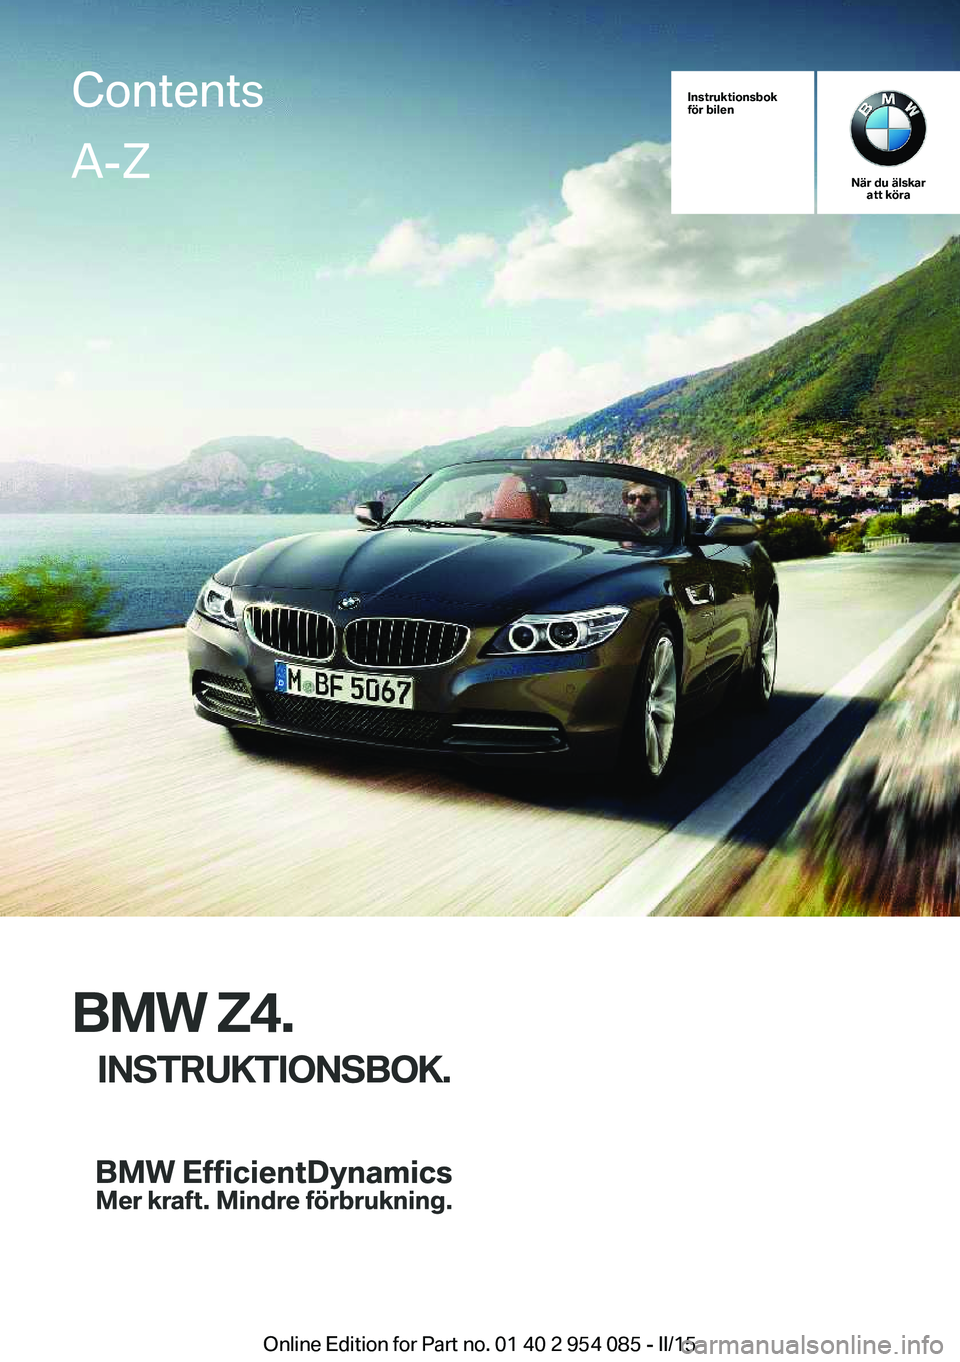 BMW Z4 2016  InstruktionsbÖcker (in Swedish) Instruktionsbok
för bilen
När du älskar att köra
BMW Z4.
INSTRUKTIONSBOK.
ContentsA-Z
Online Edition for Part no. 01 40 2 954 085 - II/15   